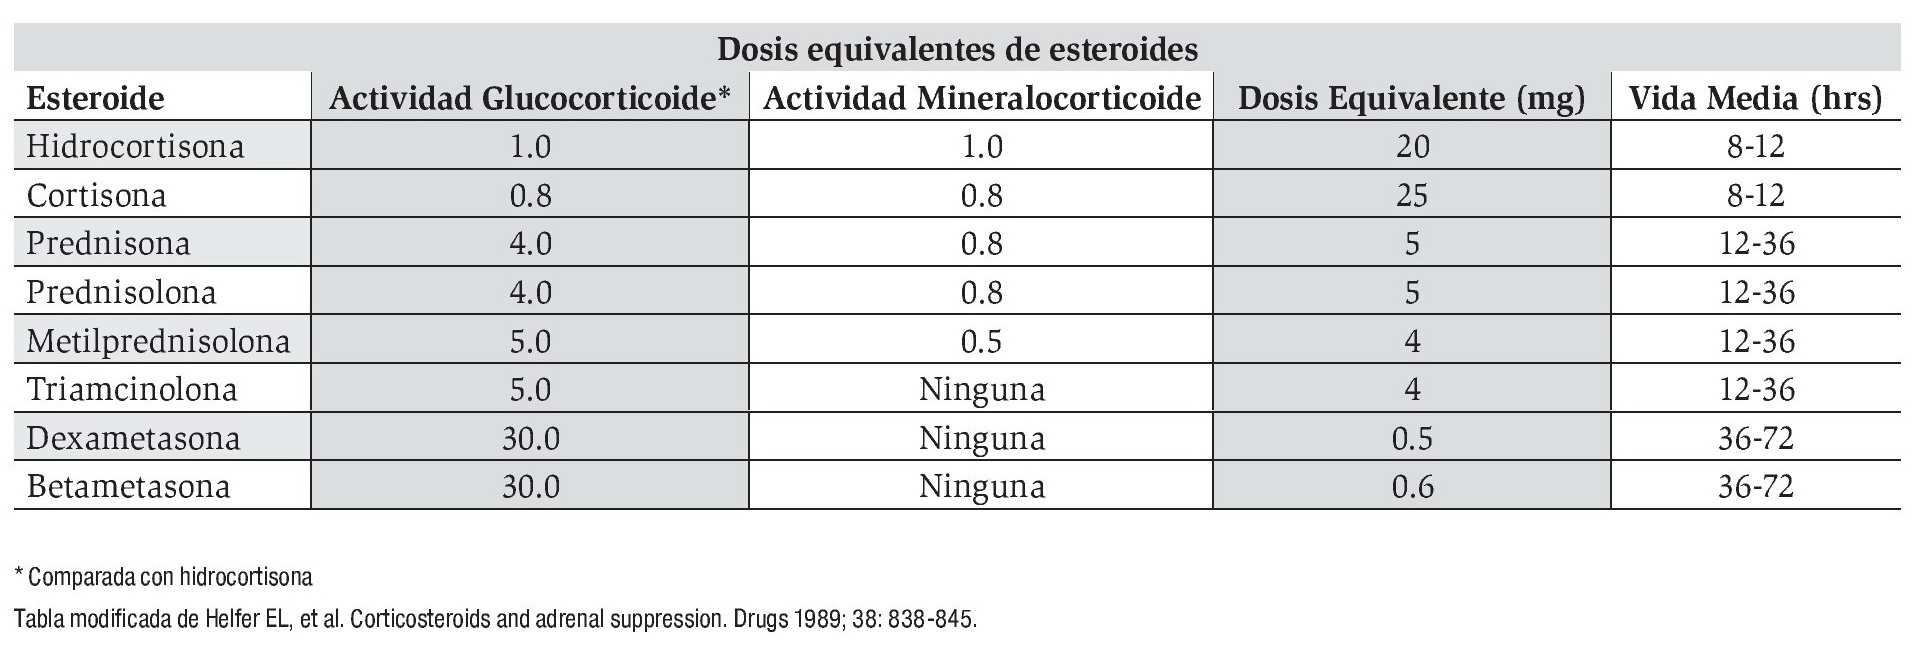 mero repollo imán Equivalencias en potencia de colirios de corticoides y su efecto en la  presión y penetración intraocular - FacoElche.com